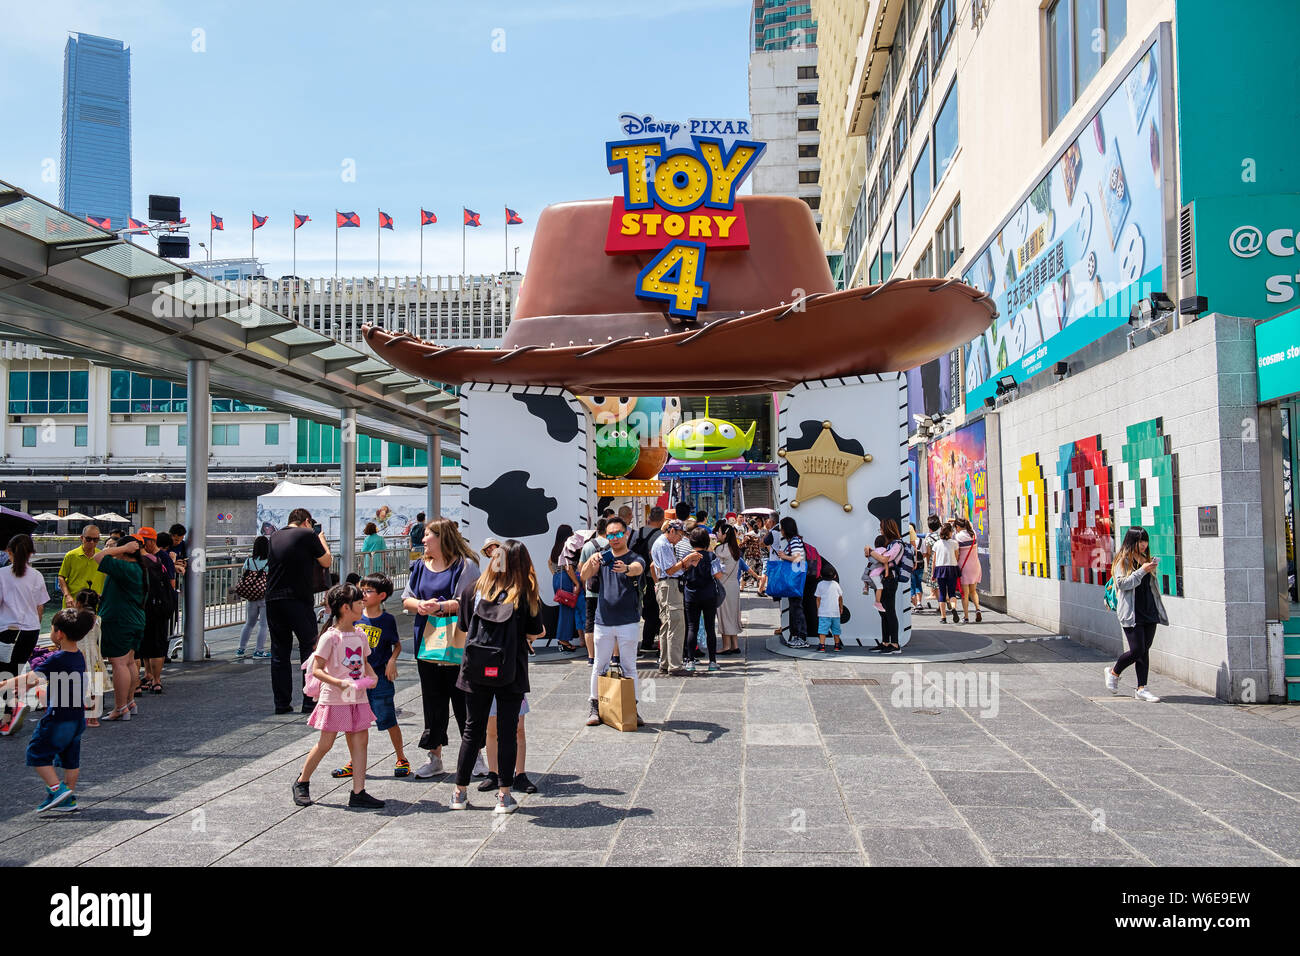 Il cappello da cowboy visto durante il carnevale.Toy Story 4 è celebrato con un carnevale a tema di diversi giochi e sfide al Porto di Hong Kong City. Foto Stock